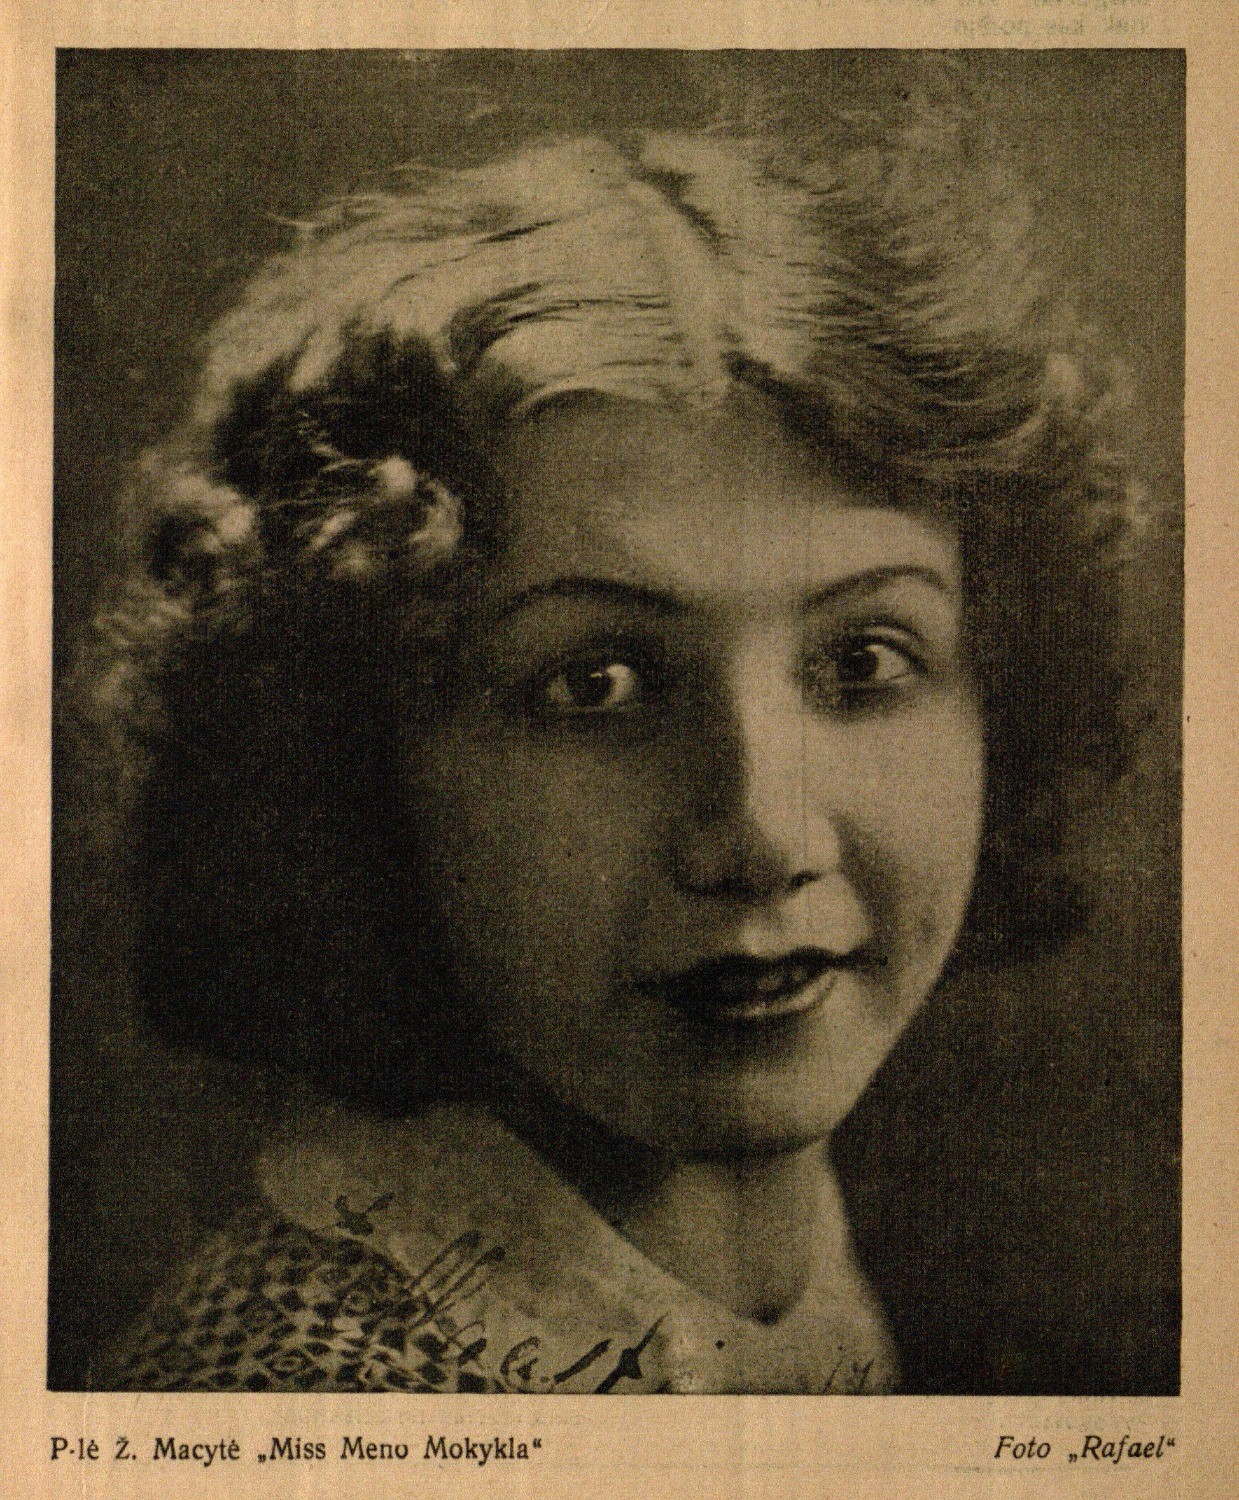 P-lė Ž. Macytė „Miss Meno Mokykla: [Eugenija Macytė-Mikšienė-Jurkūnienė]: Foto „Rafael“ // Jaunųjų pasaulis. – 1930, Nr. 4, p. 1.